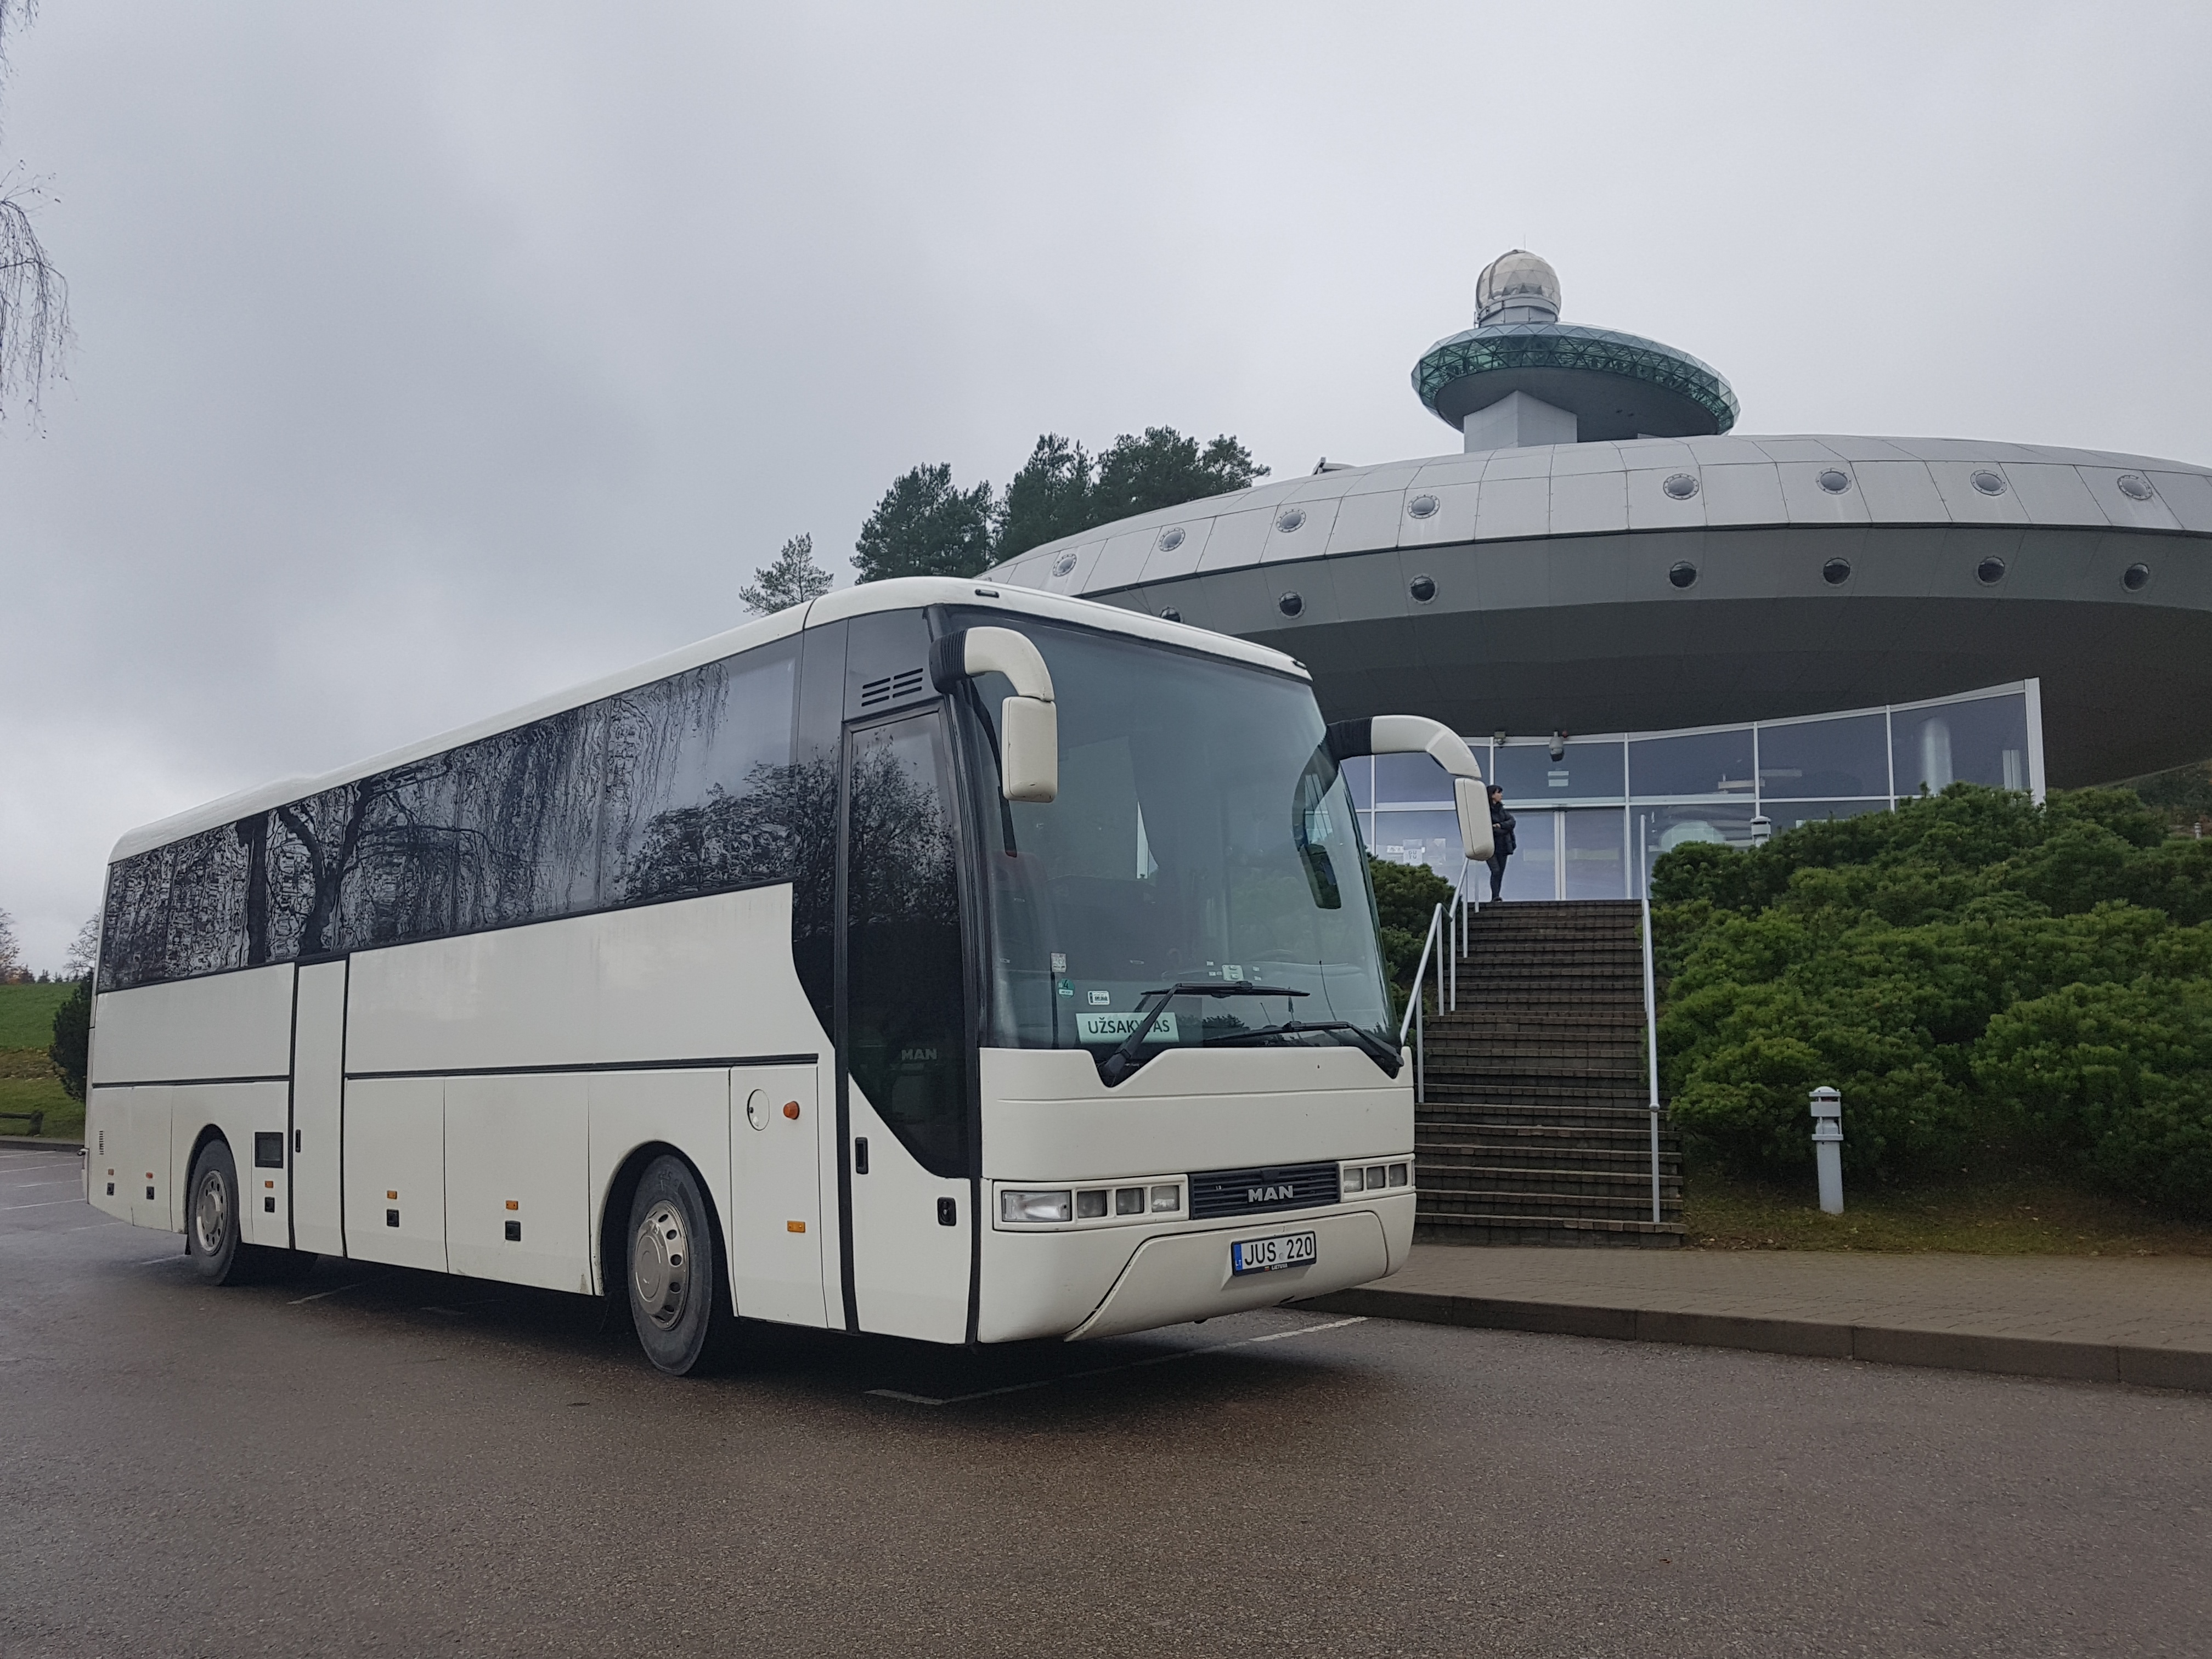 Autobusu nuoma Vilniuje, coach rental in Vilnius